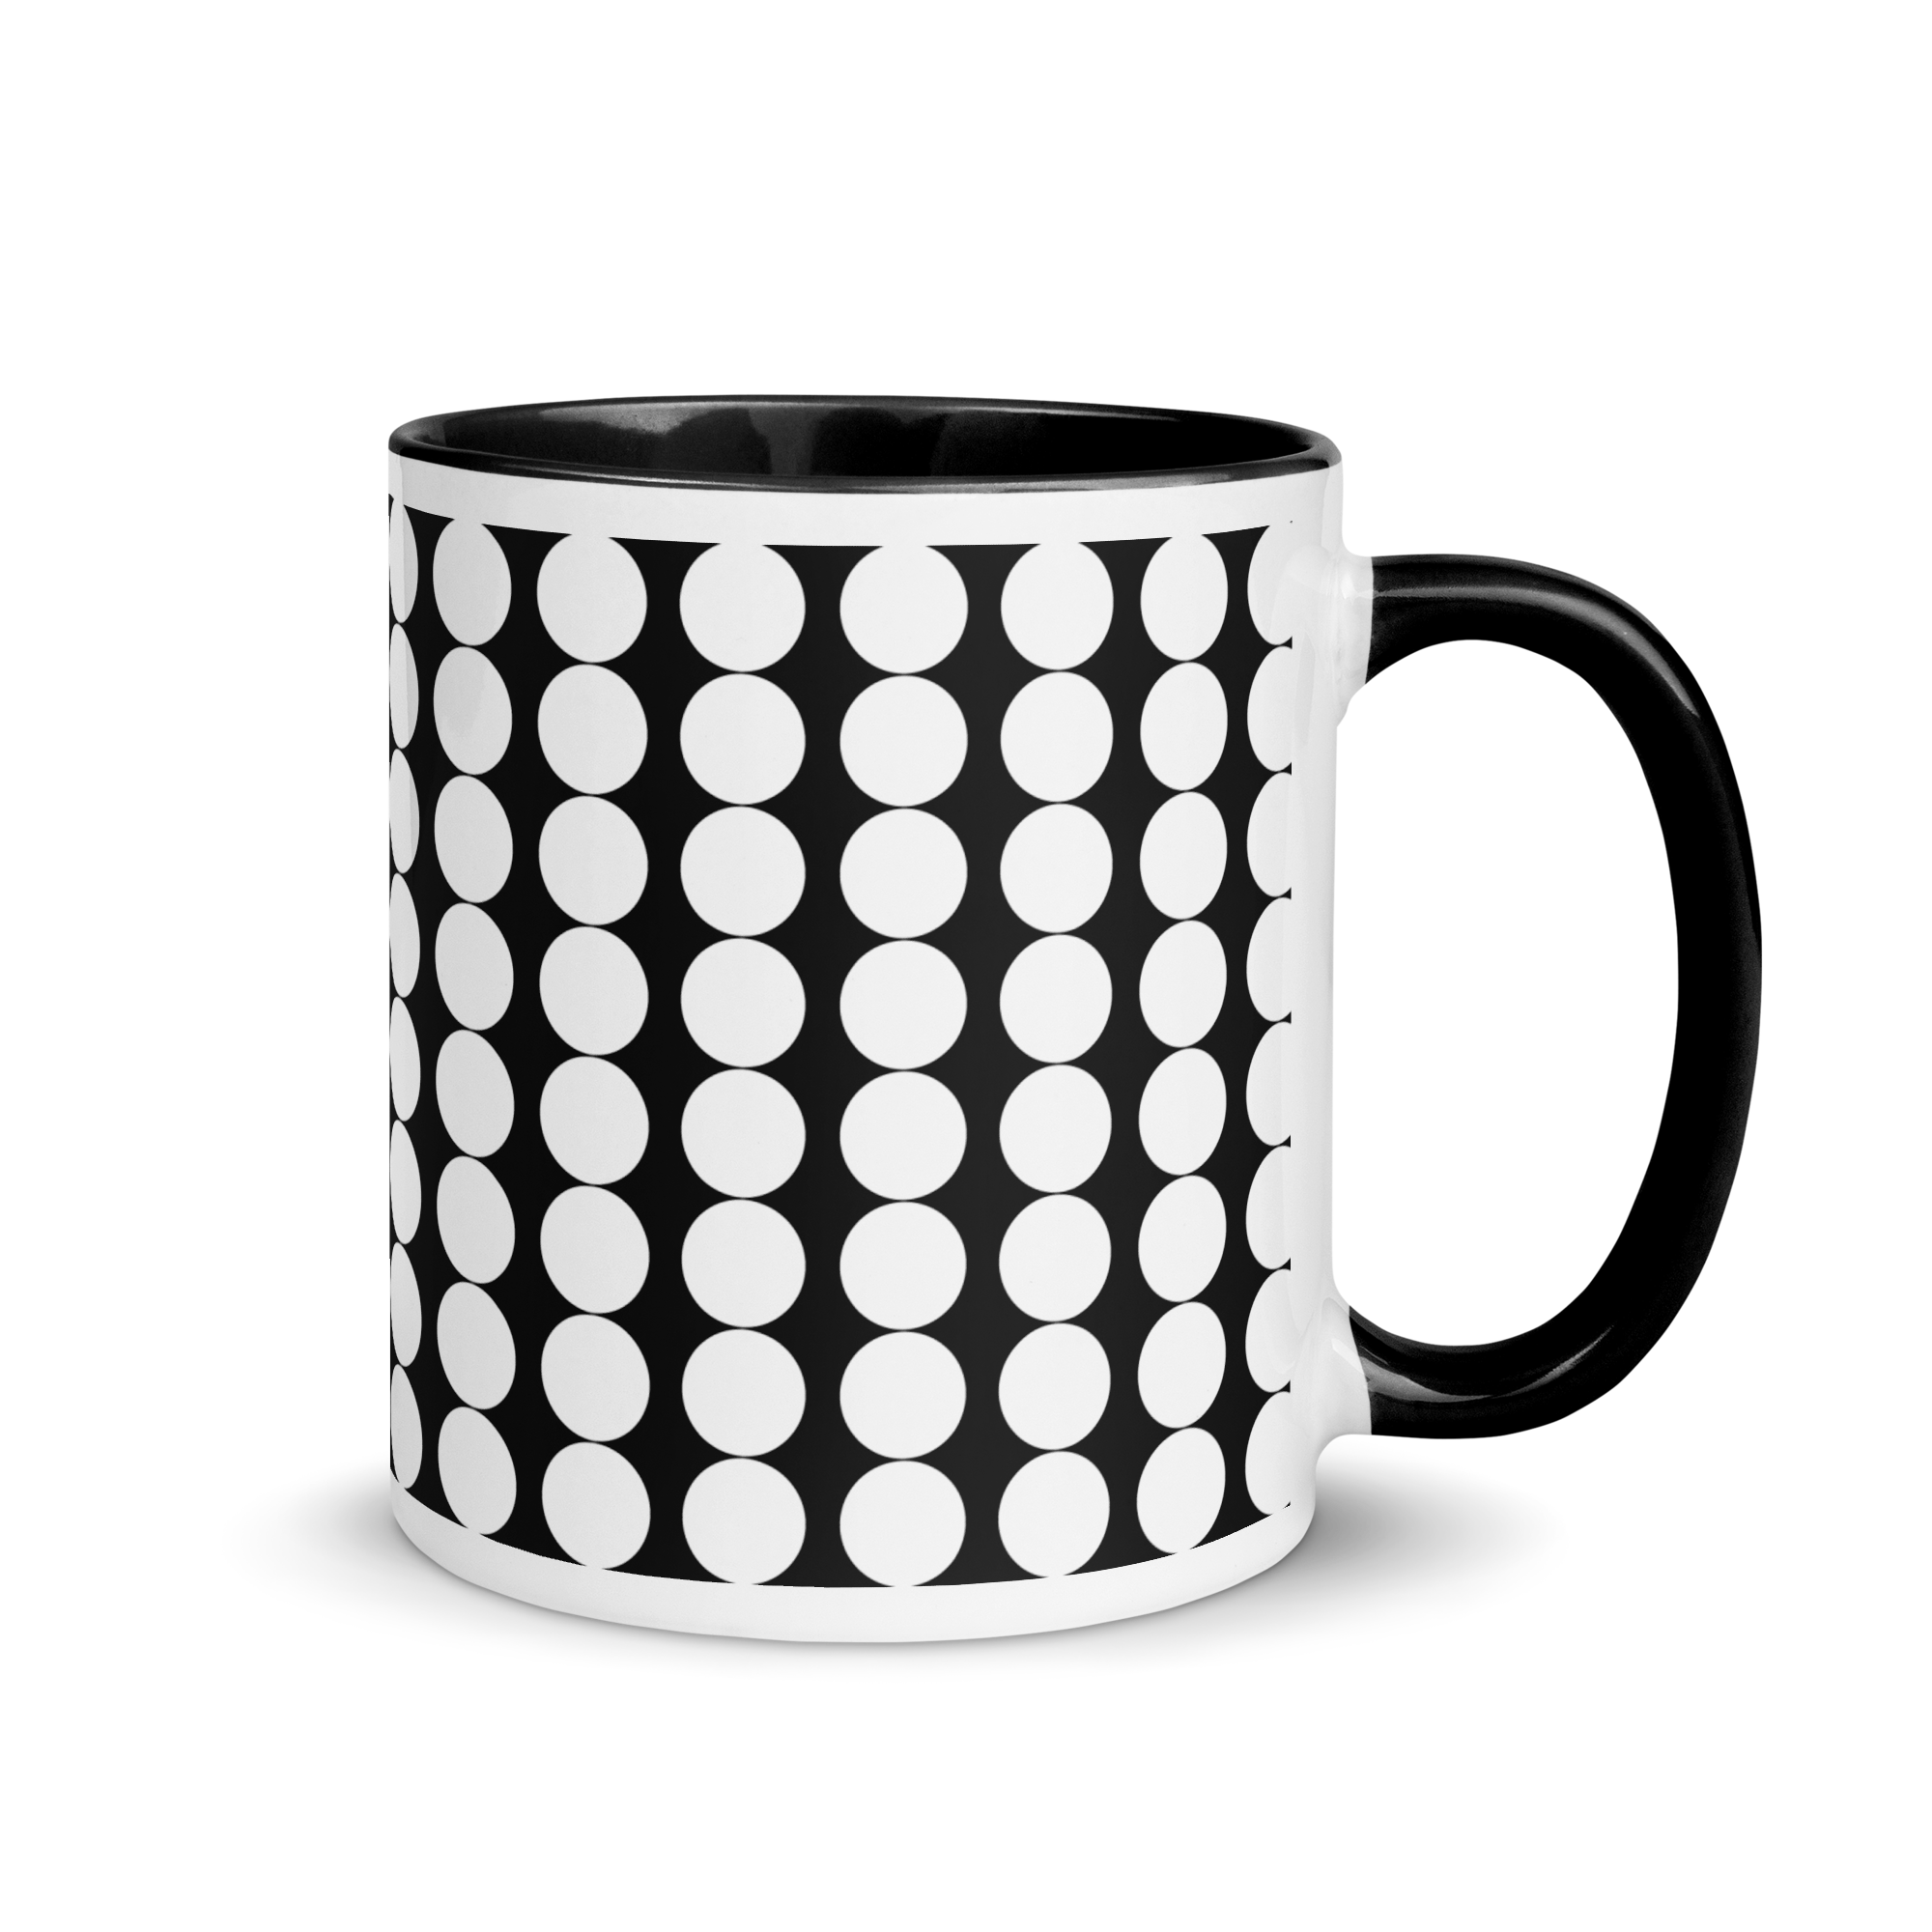 white-ceramic-mug-with-color-inside-black-11-oz-right-65e4712a25551.png